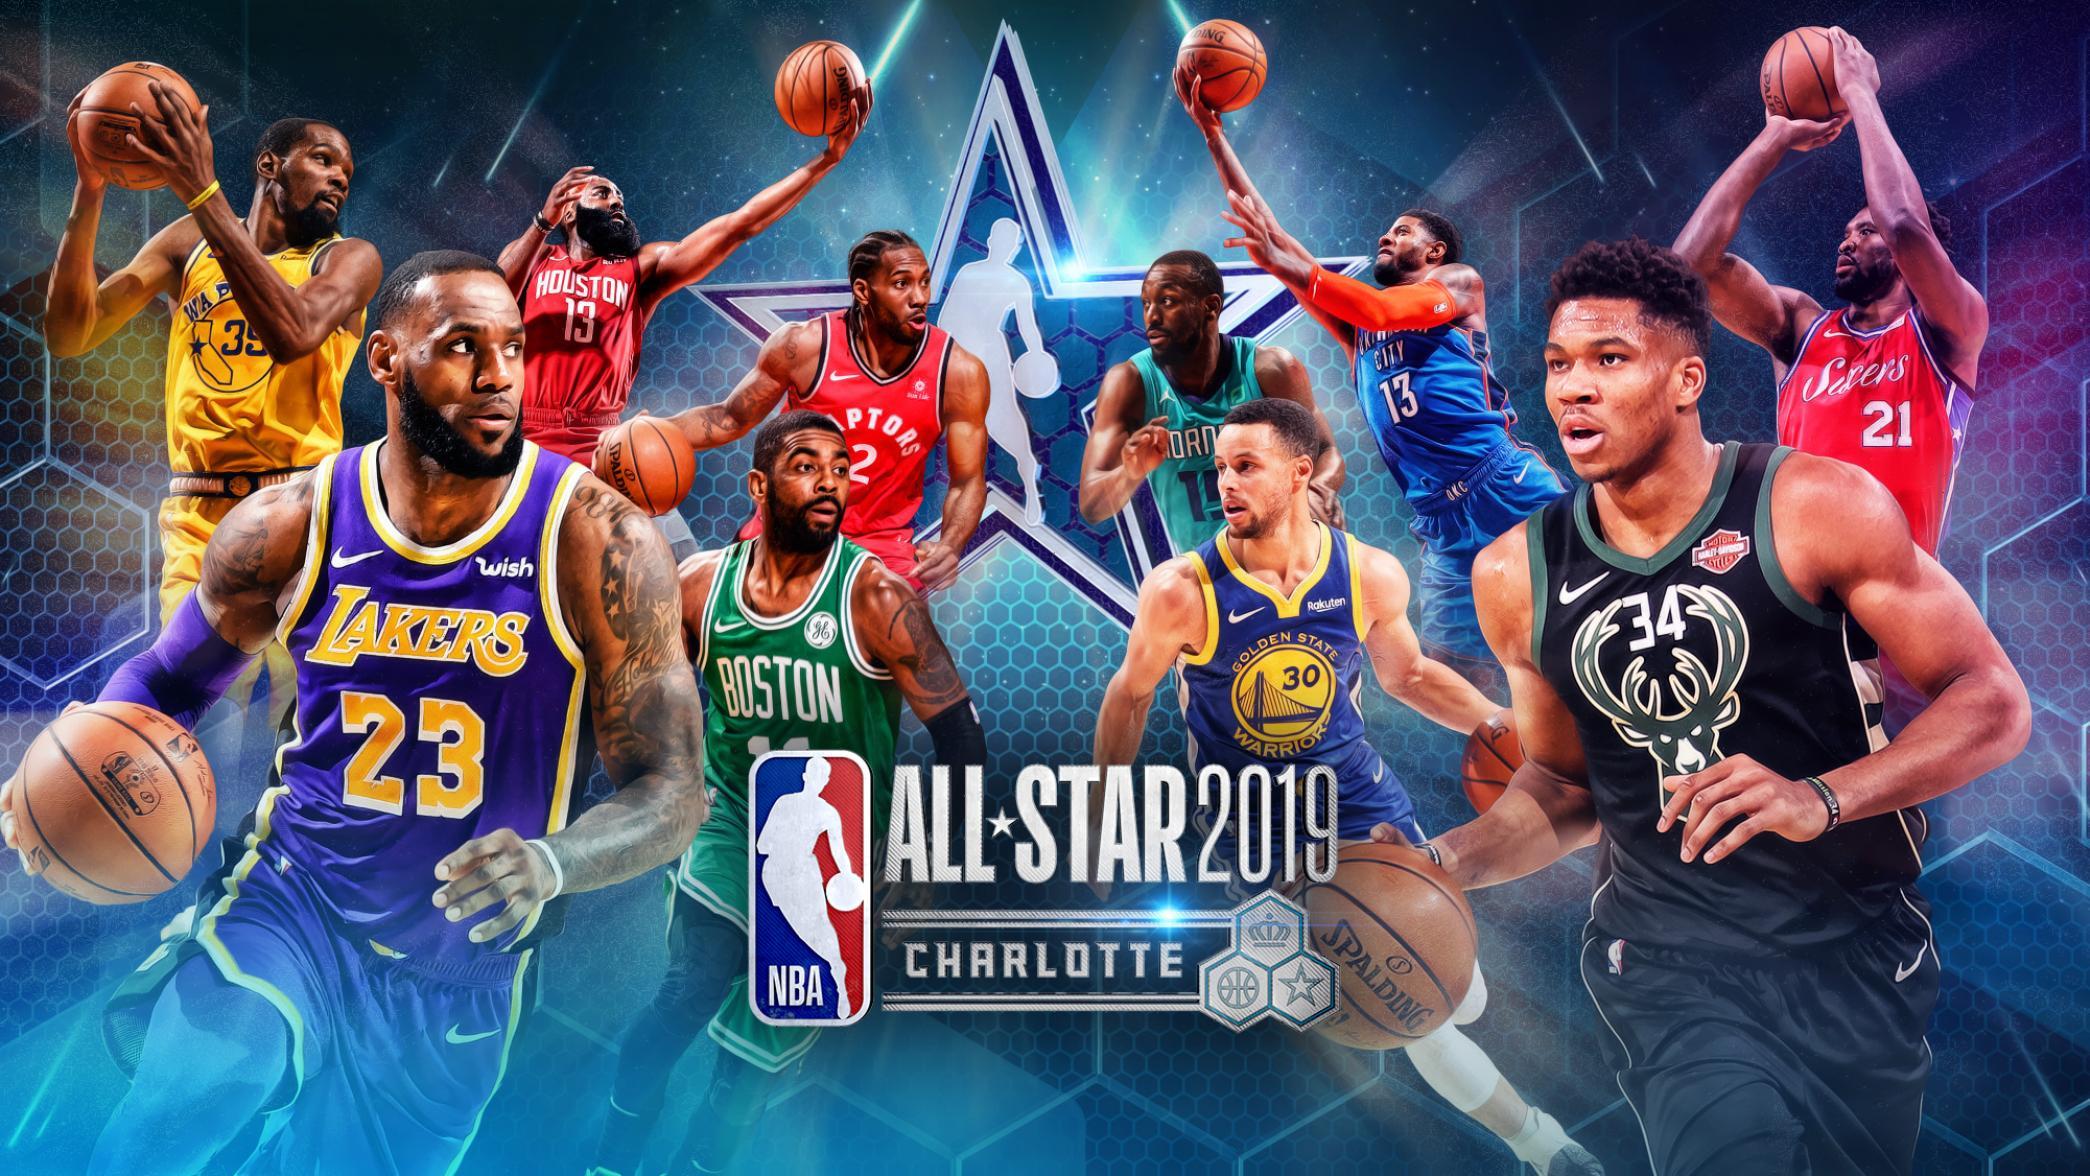 NBA 2019 Raptors vs Warriors stream online schedule